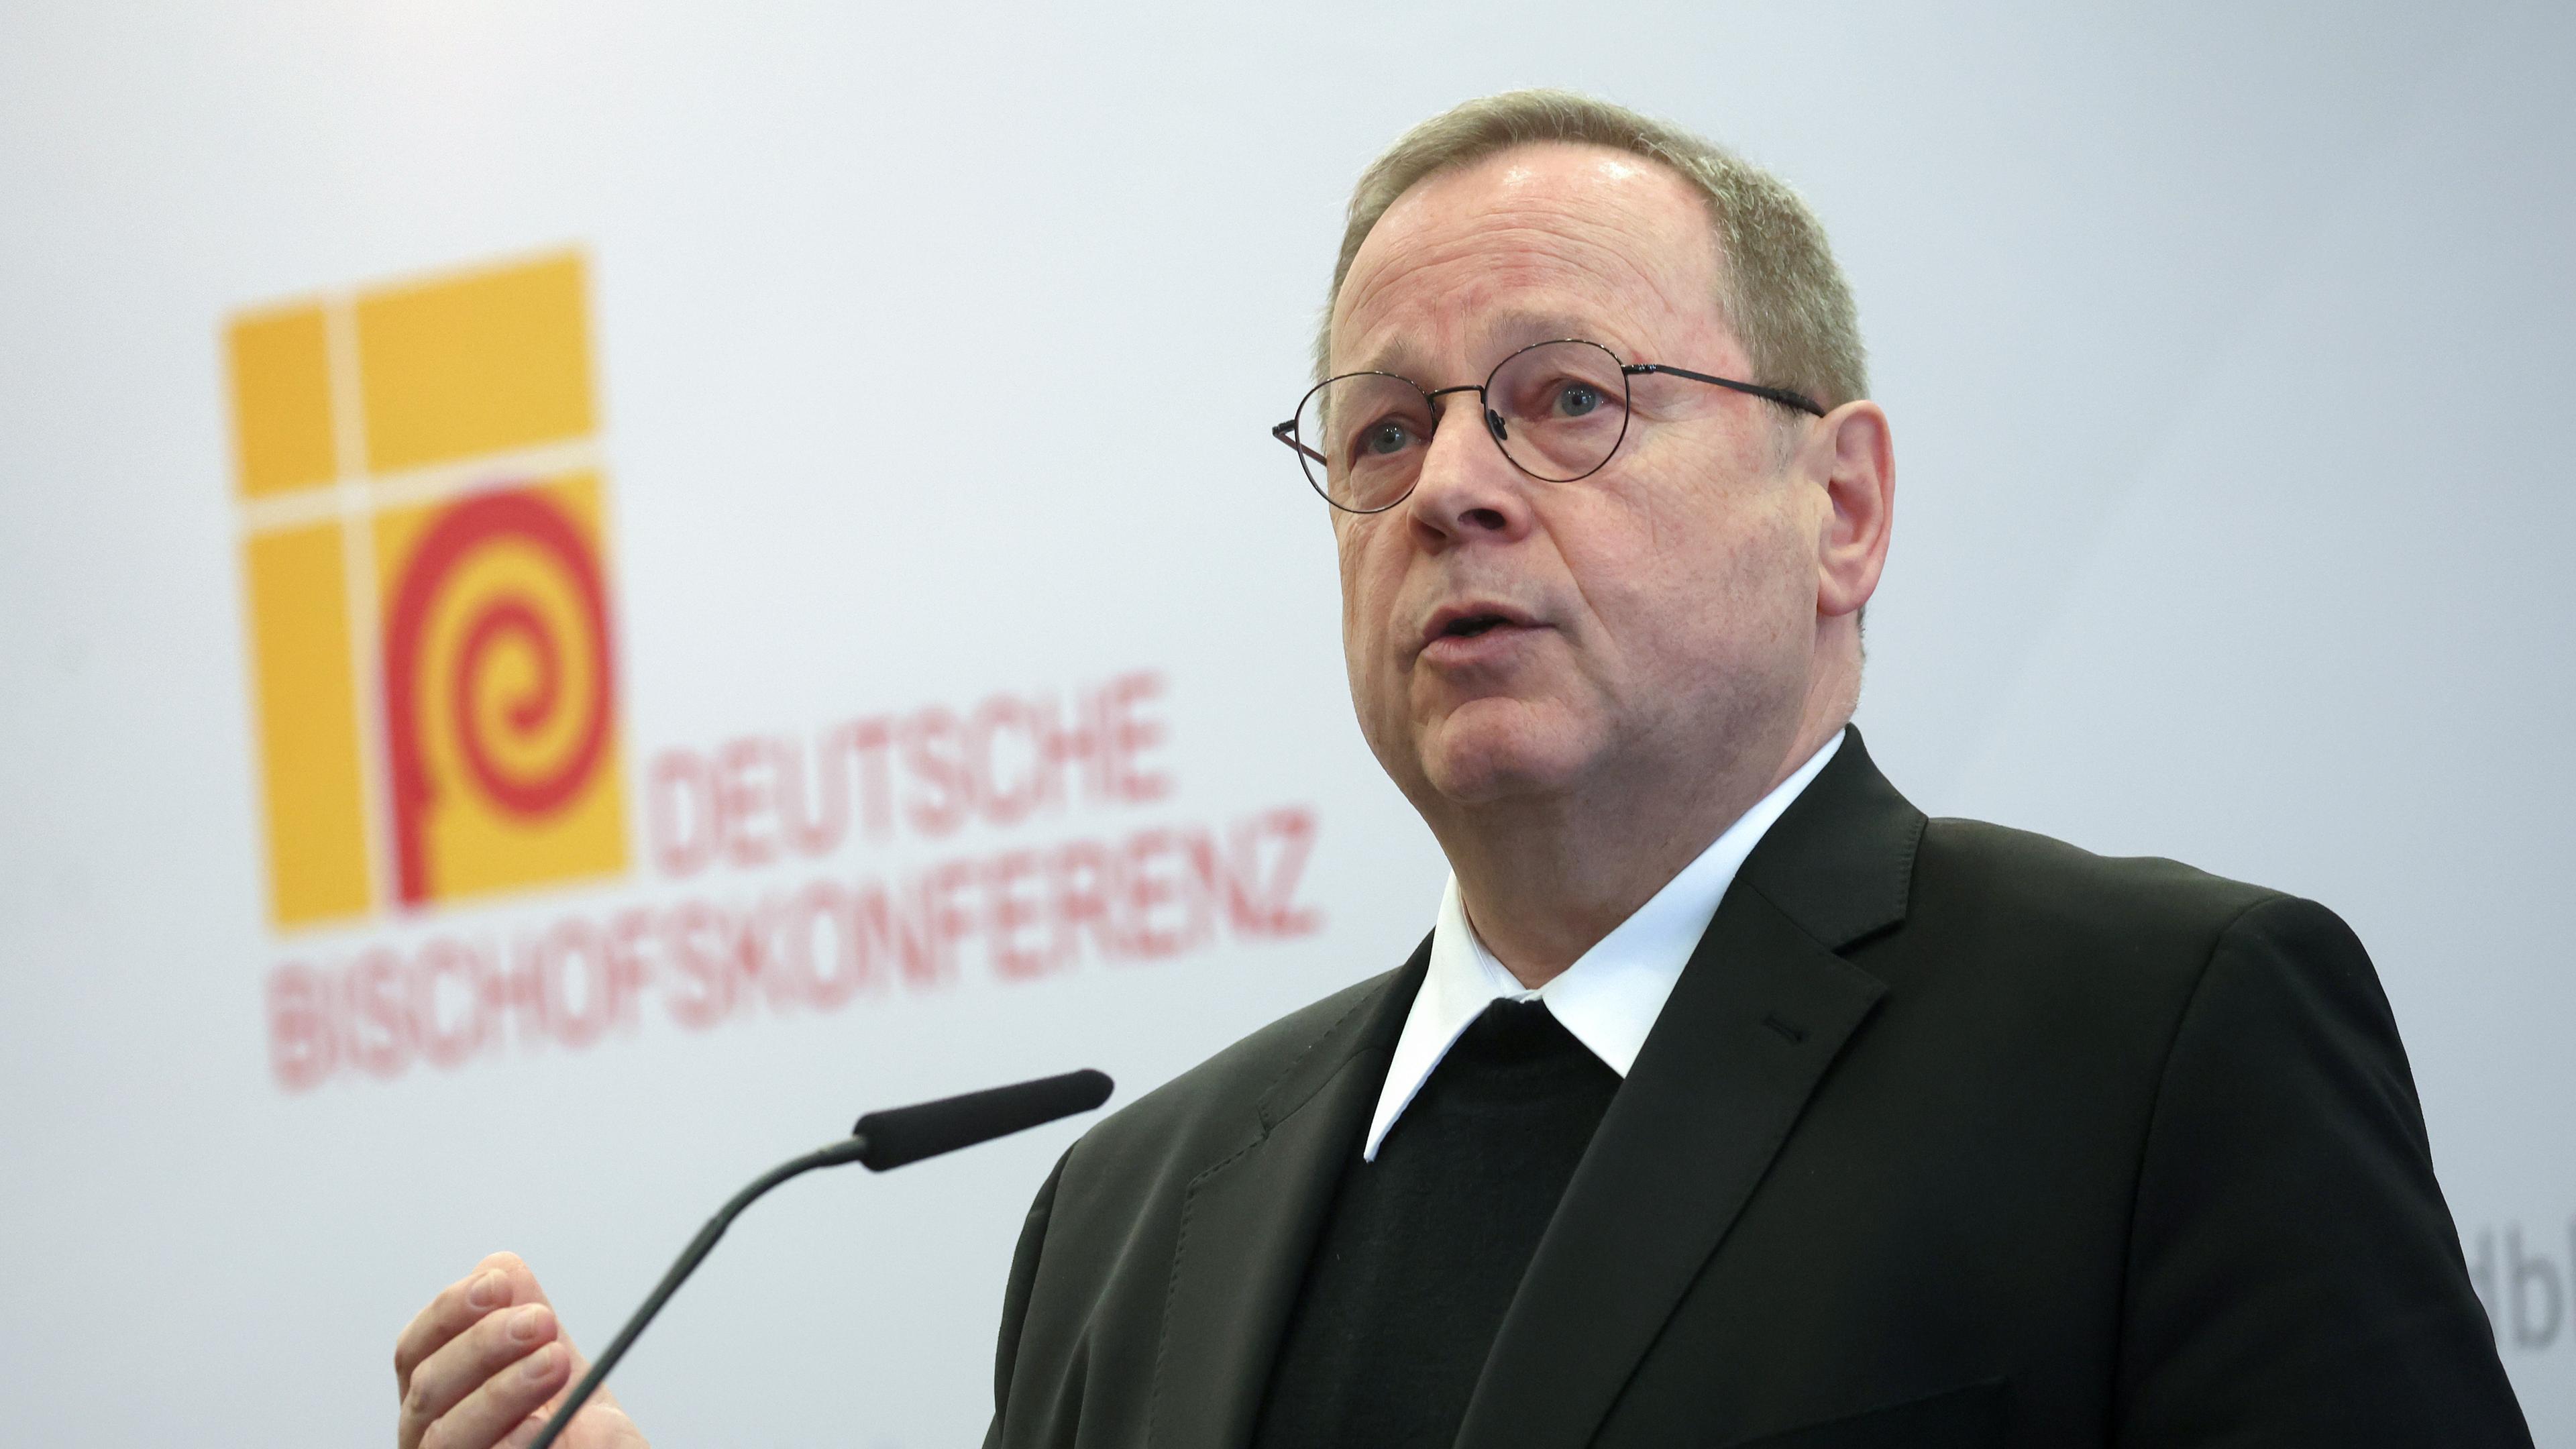 Bischof Georg Bätzing, Vorsitzender der Deutschen Bischofskonferenz, spricht bei einer Pressekonferenz